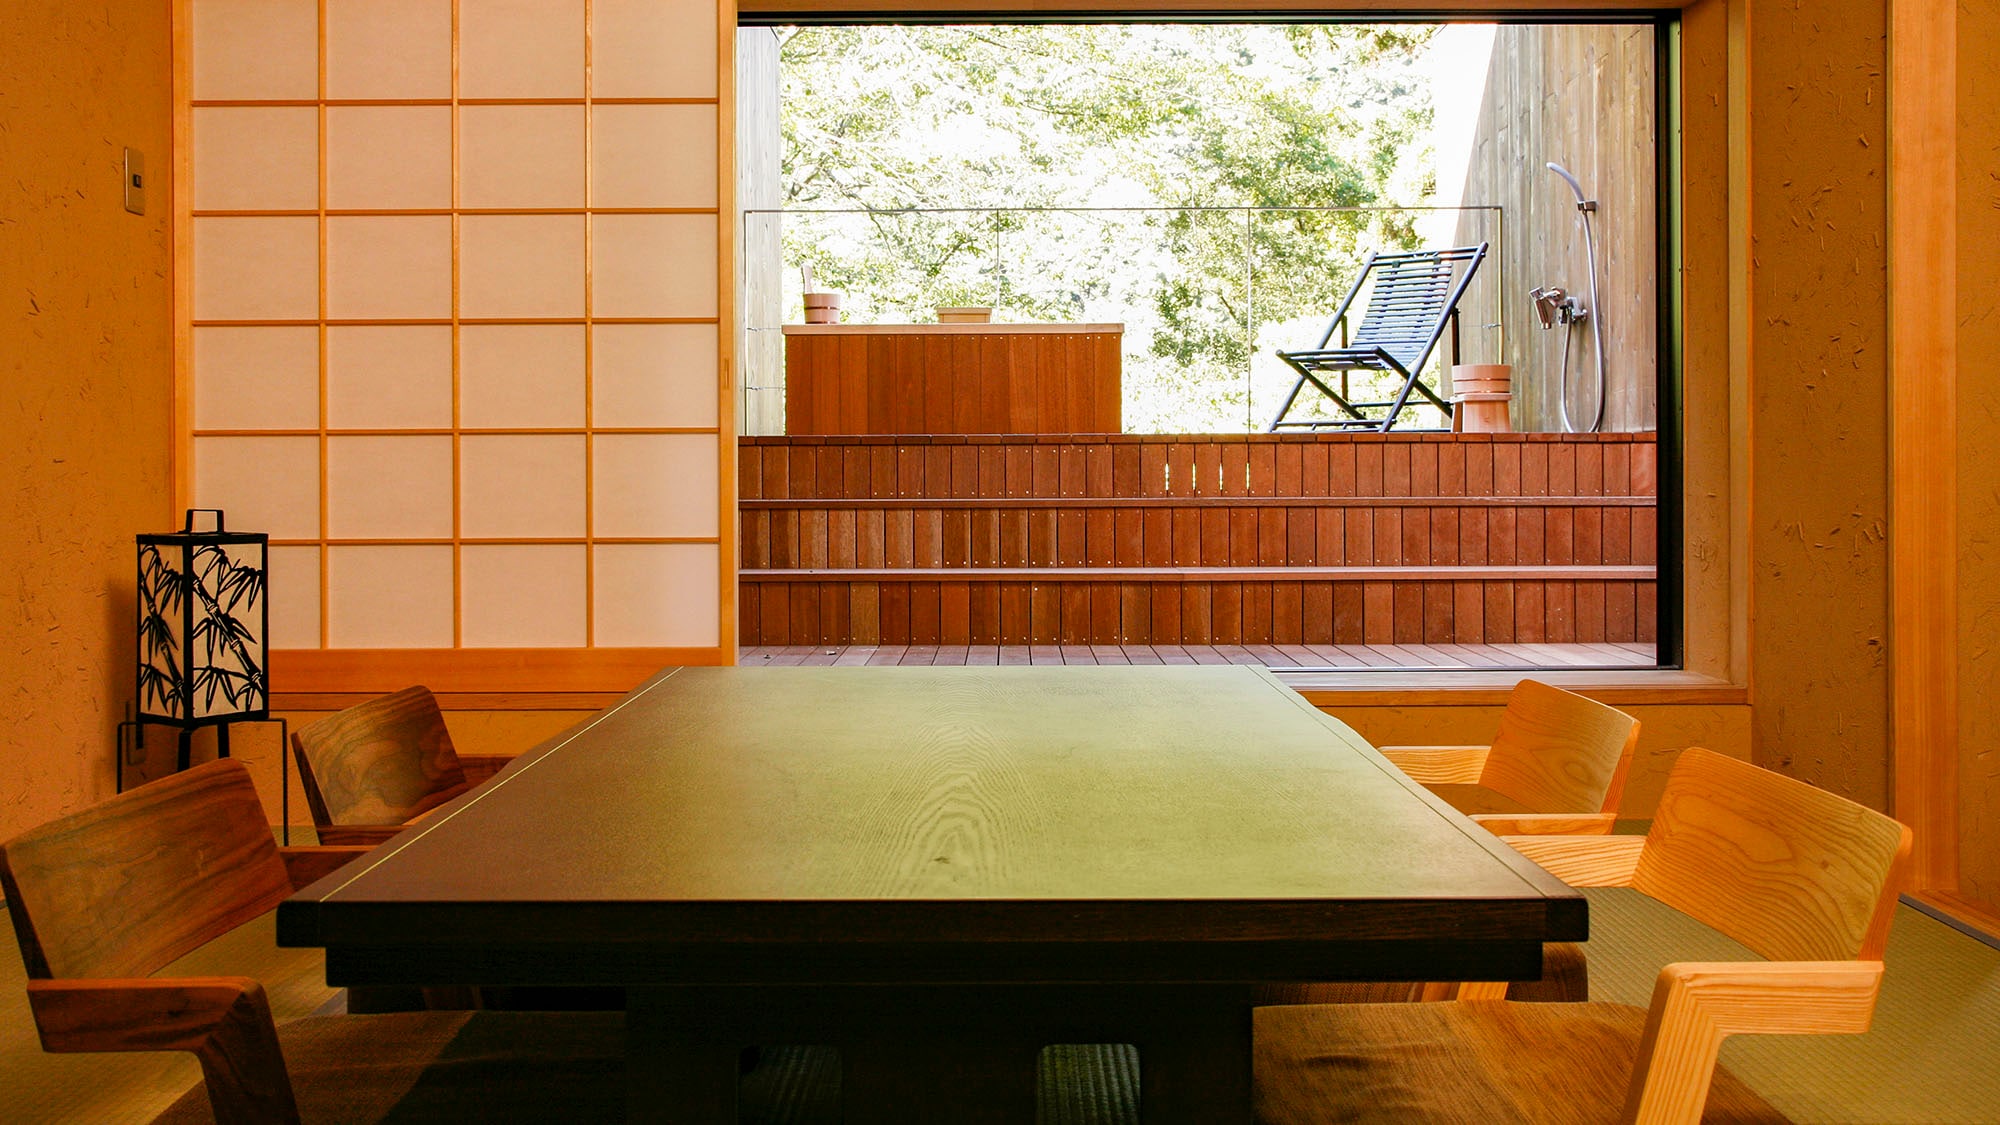 ・[ตัวอย่างห้องพัก Kohaku] ห้องอาบน้ำกลางแจ้งบนระเบียง + ห้องสไตล์ญี่ปุ่นขนาด 8 เสื่อทาทามิ + ห้องเตียงแฝด